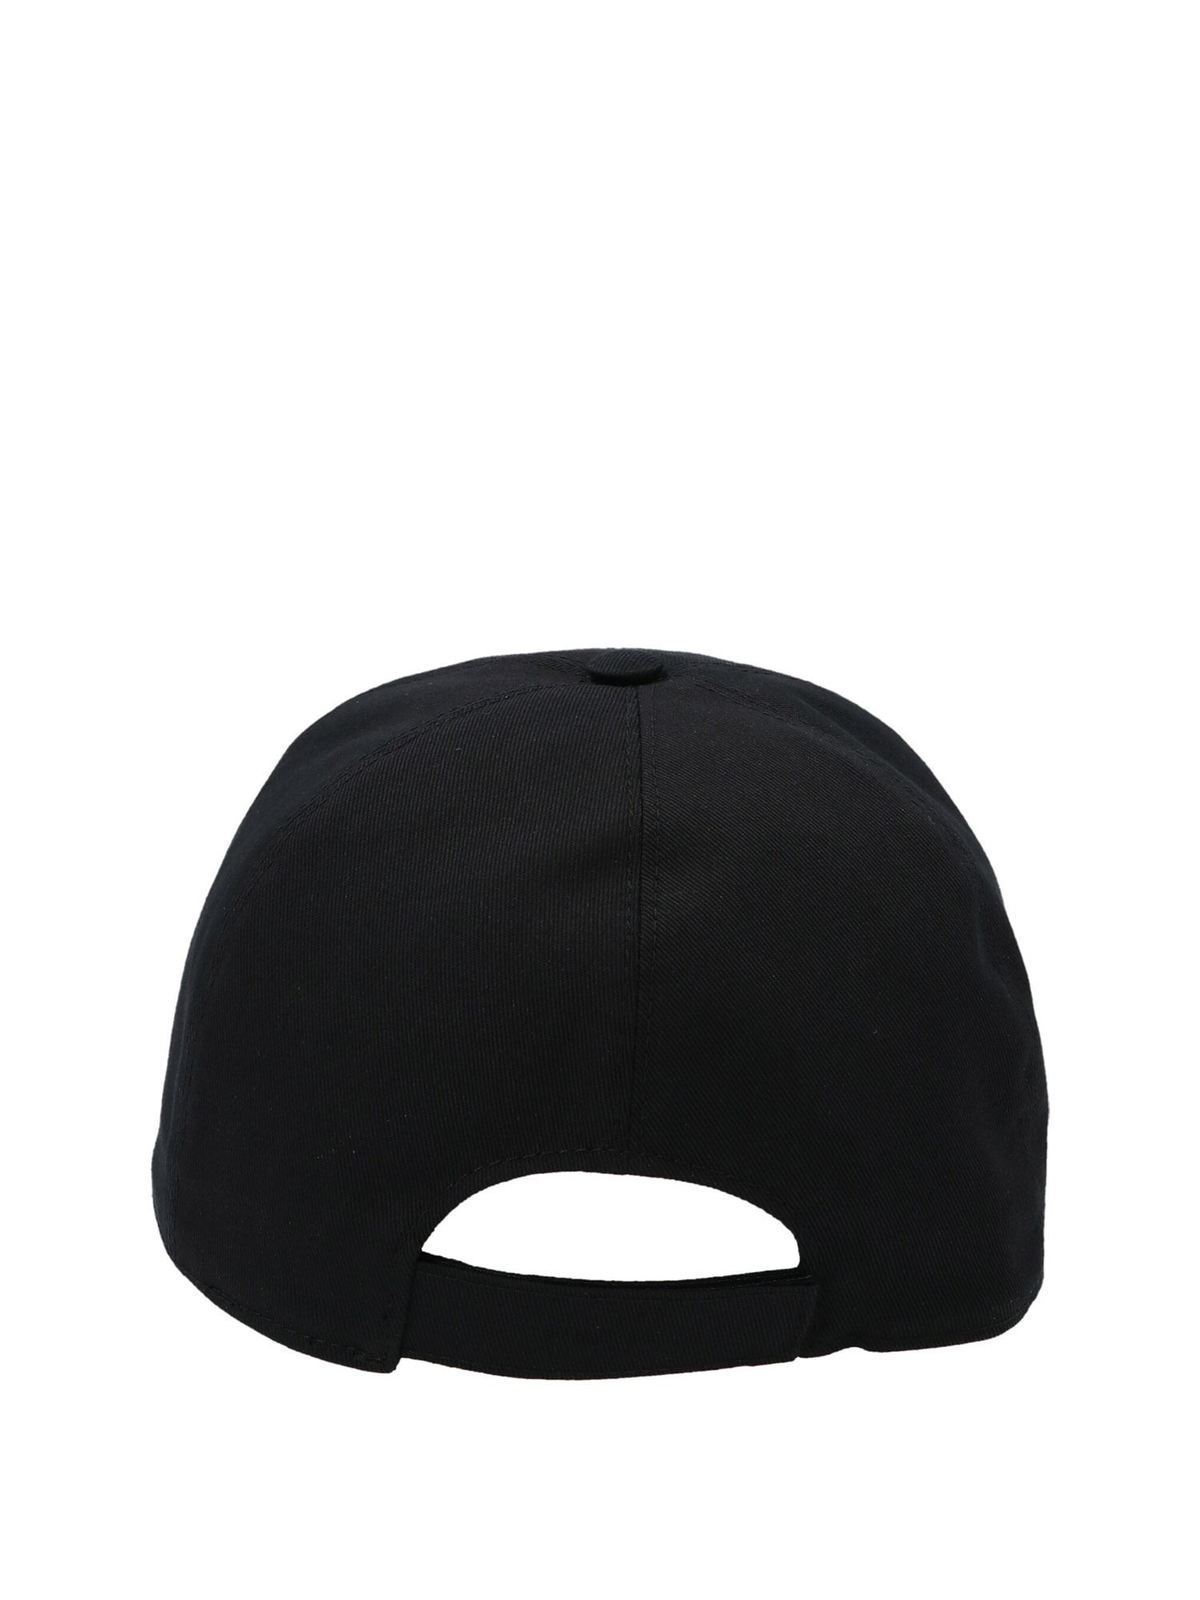 versace black hat